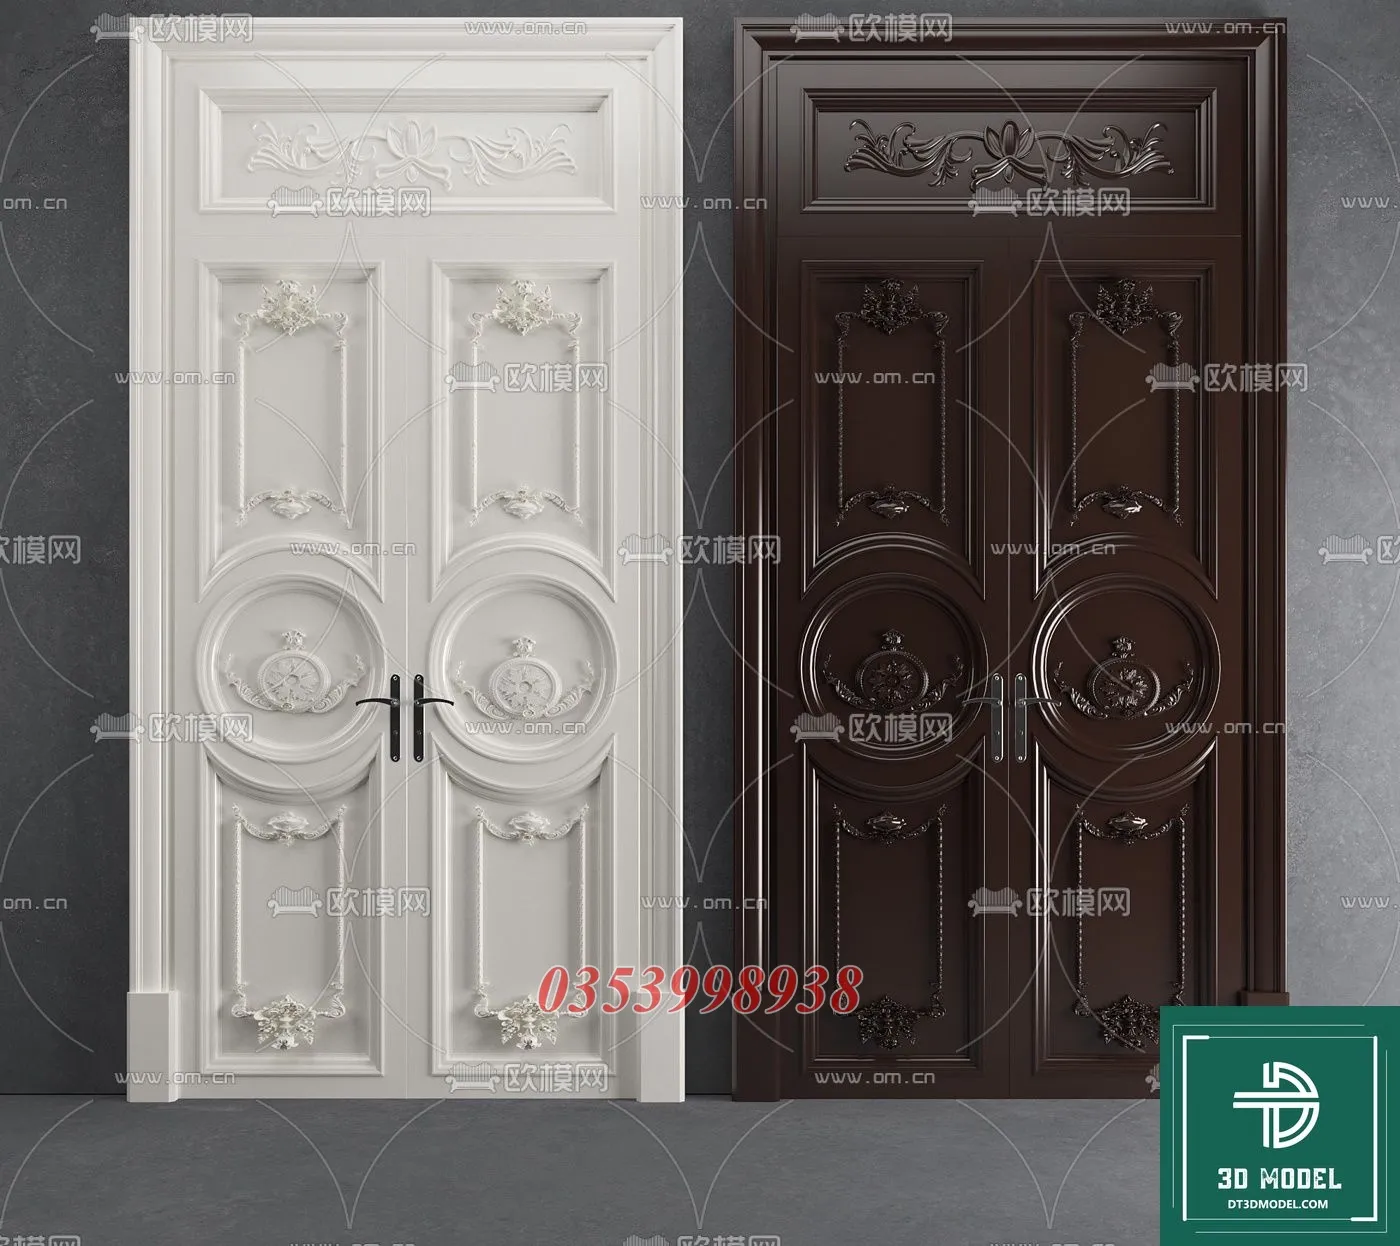 CLASSIC DOOR – 3dsmax MODELS – 041